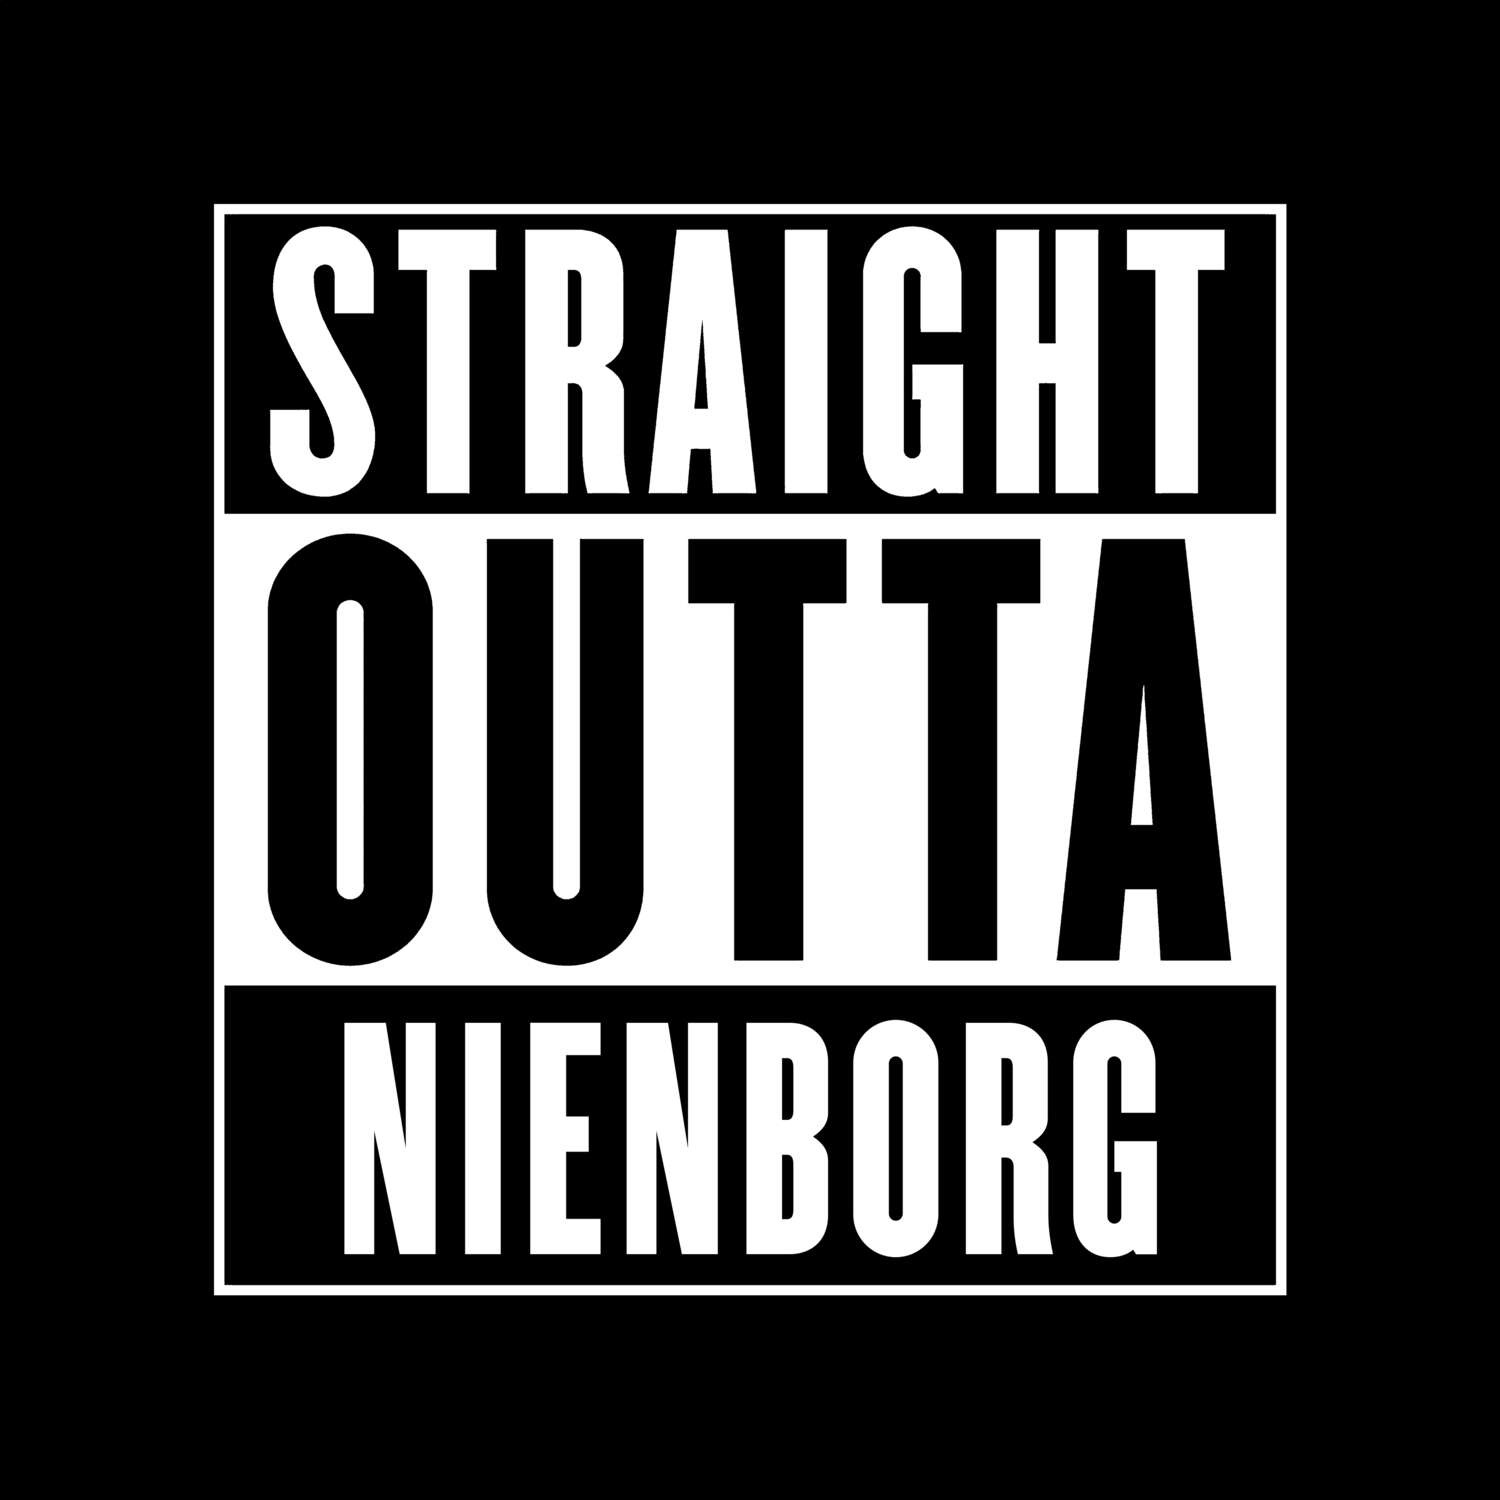 Nienborg T-Shirt »Straight Outta«